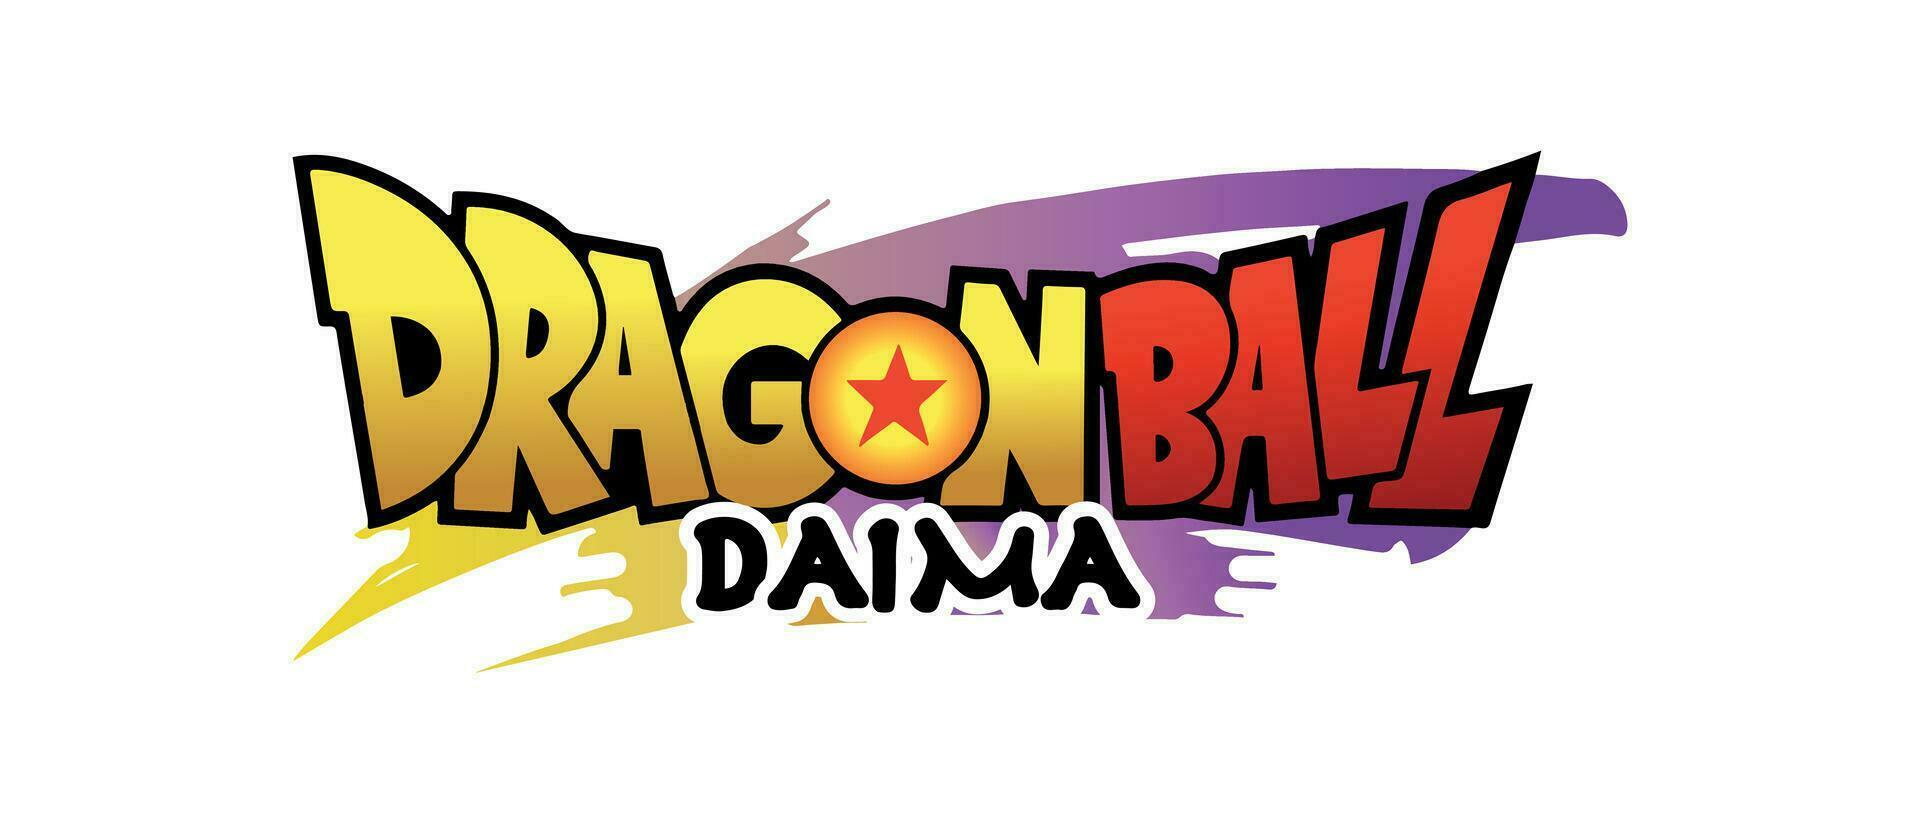 Drachen Ball daima Logo vektor